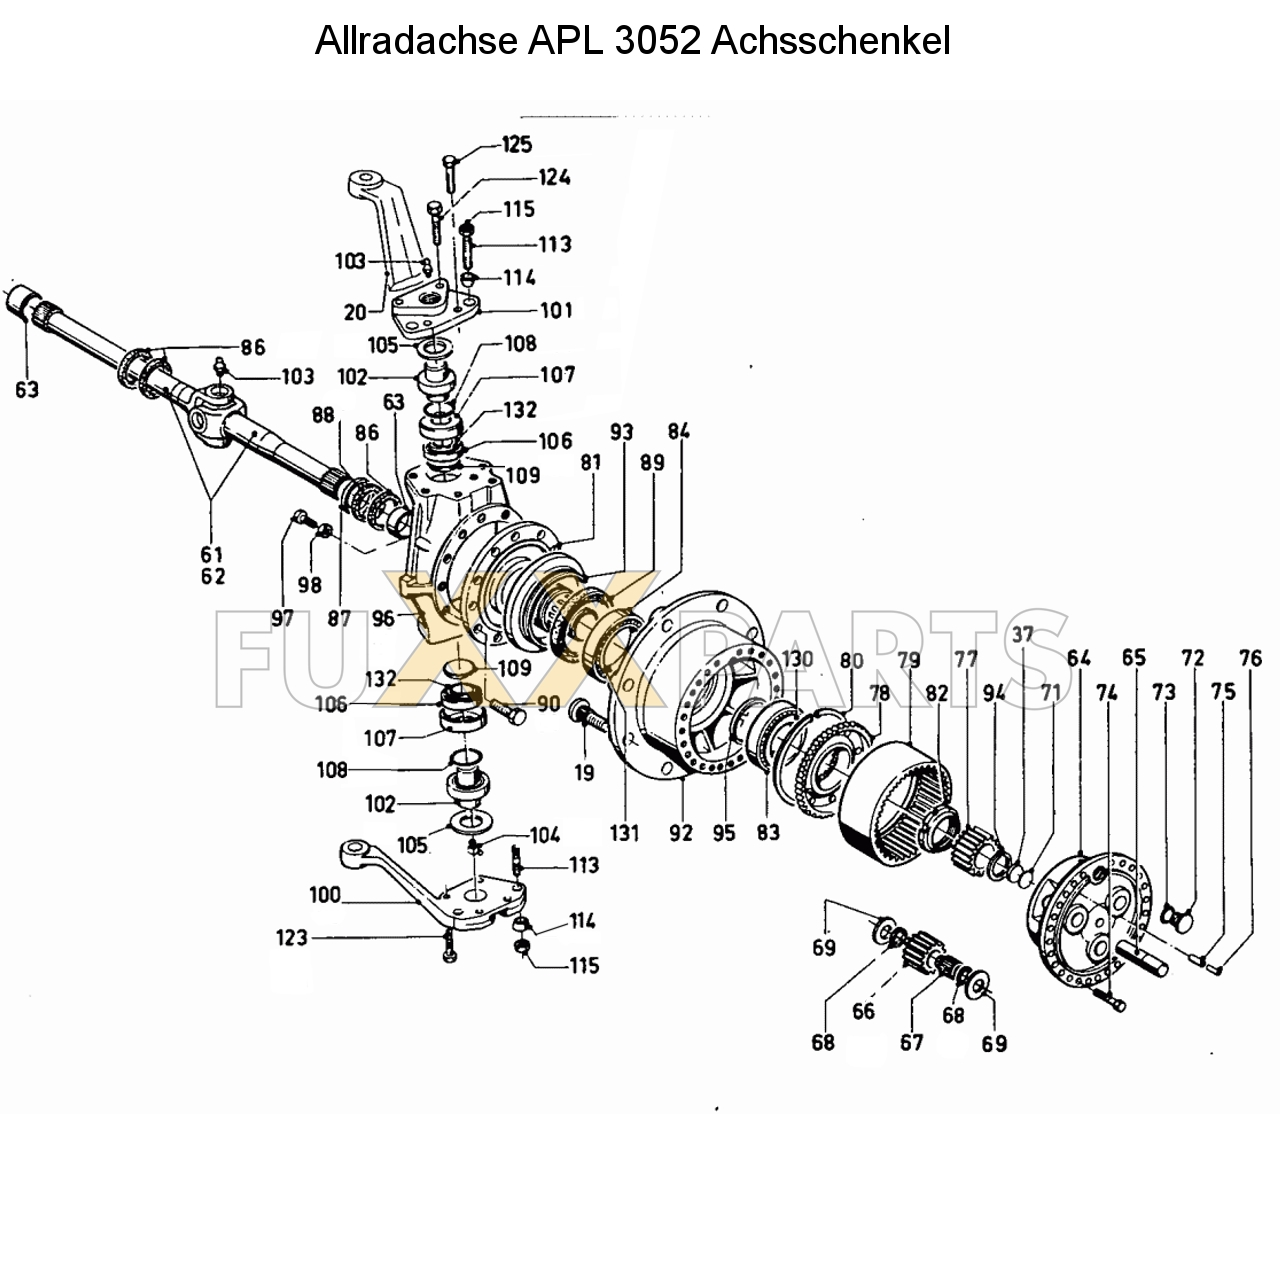 D 10006 Allradachse APL 3052 Achsschenkel